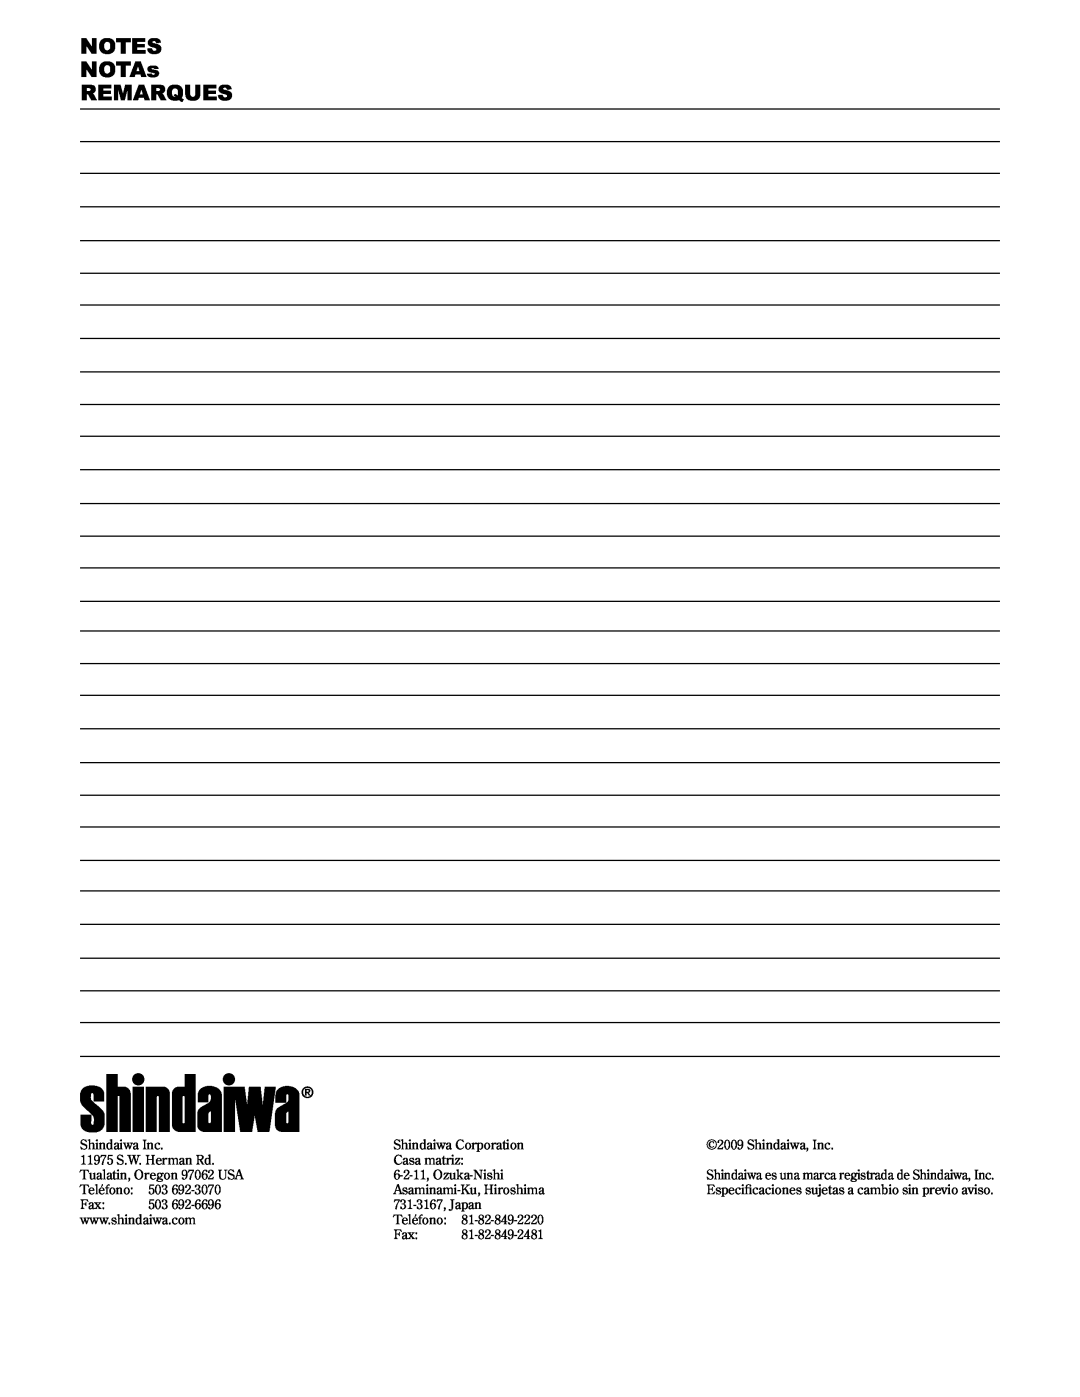 Shindaiwa T2510/EVC, 89300, T2510X/EVC manual NOTES NOTAs REMARQUES, Shindaiwa Inc 